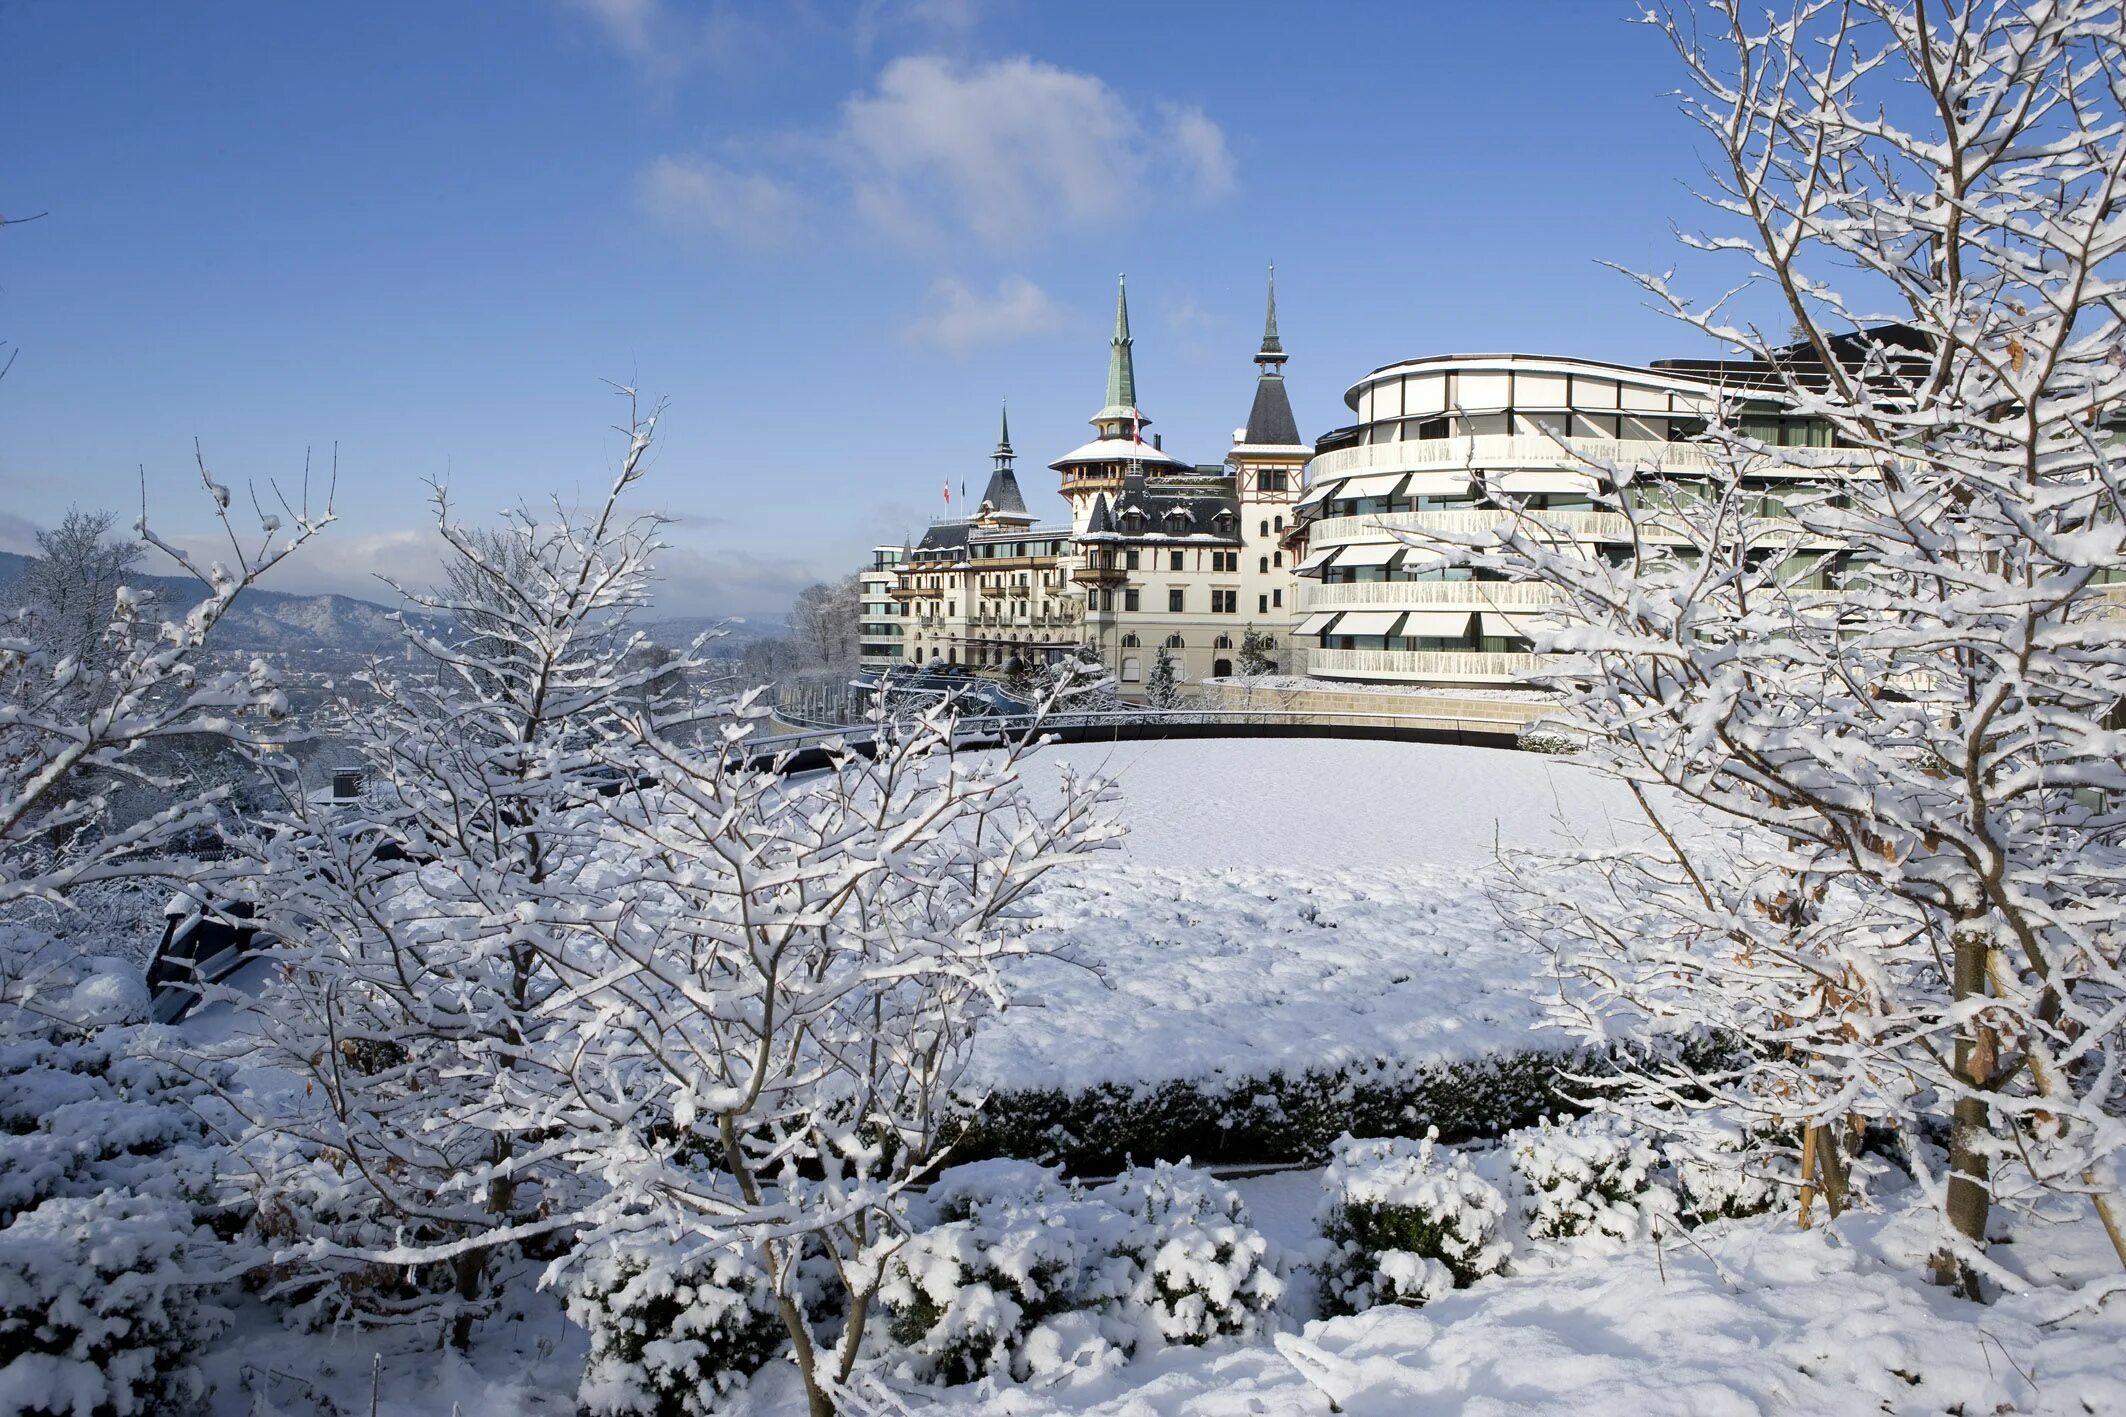 Зимой где сидели. The Dolder Grand, Цюрих, Швейцария. «Grand Hotel Dolder” Швейцария 19 век. Швейцария ,, Долдер Гранд отель. Цюрих Швейцария зимой.